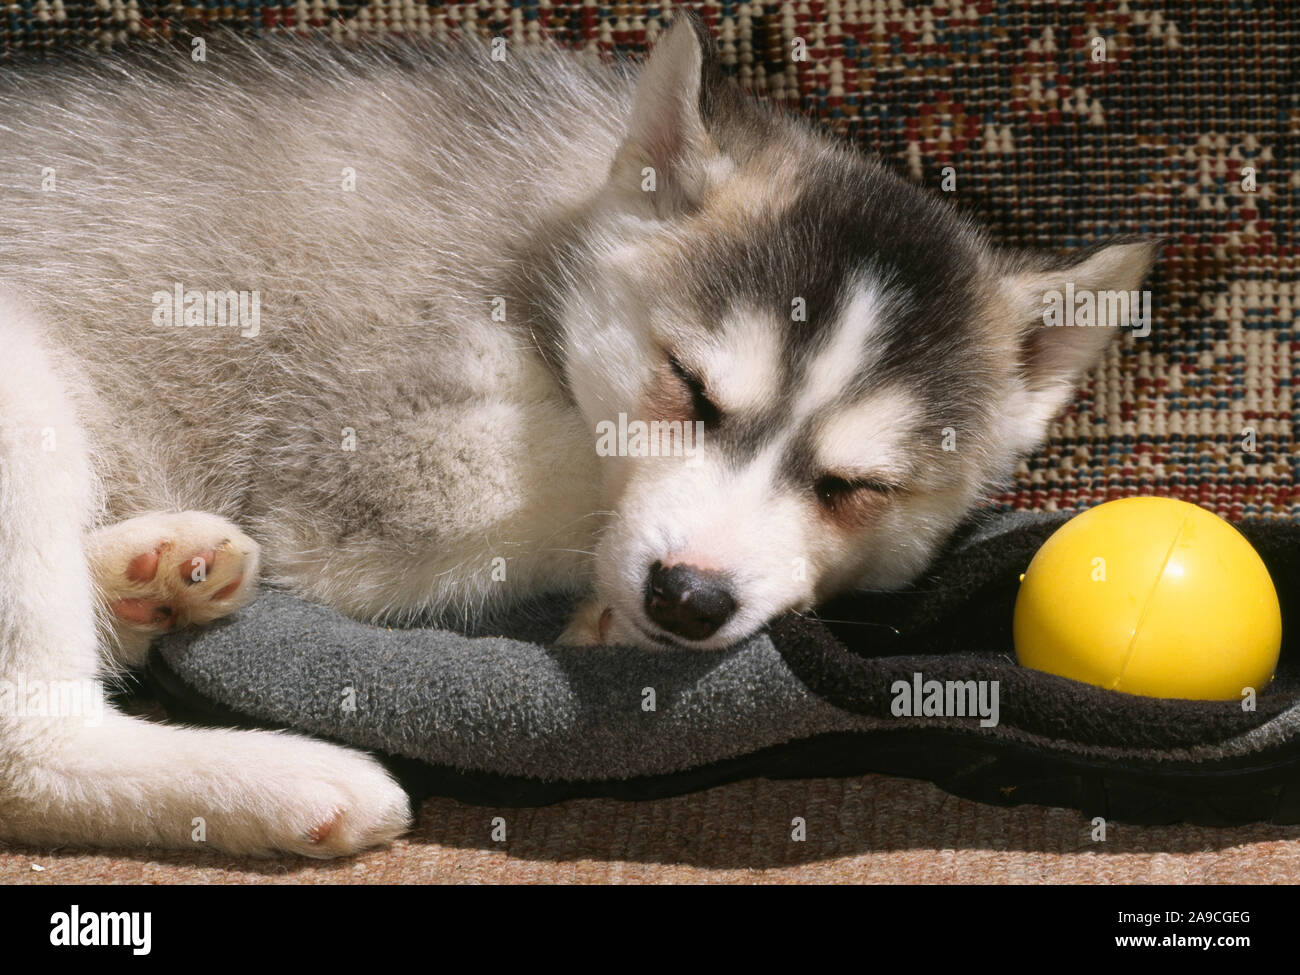 SIBERIAN HUSKY 8 Wochen alten Welpen Canis Lupus Familiaris schlafen auf Slipper mit Ball spielen. Lassen Sie schlafende Hunde liegen. Stockfoto